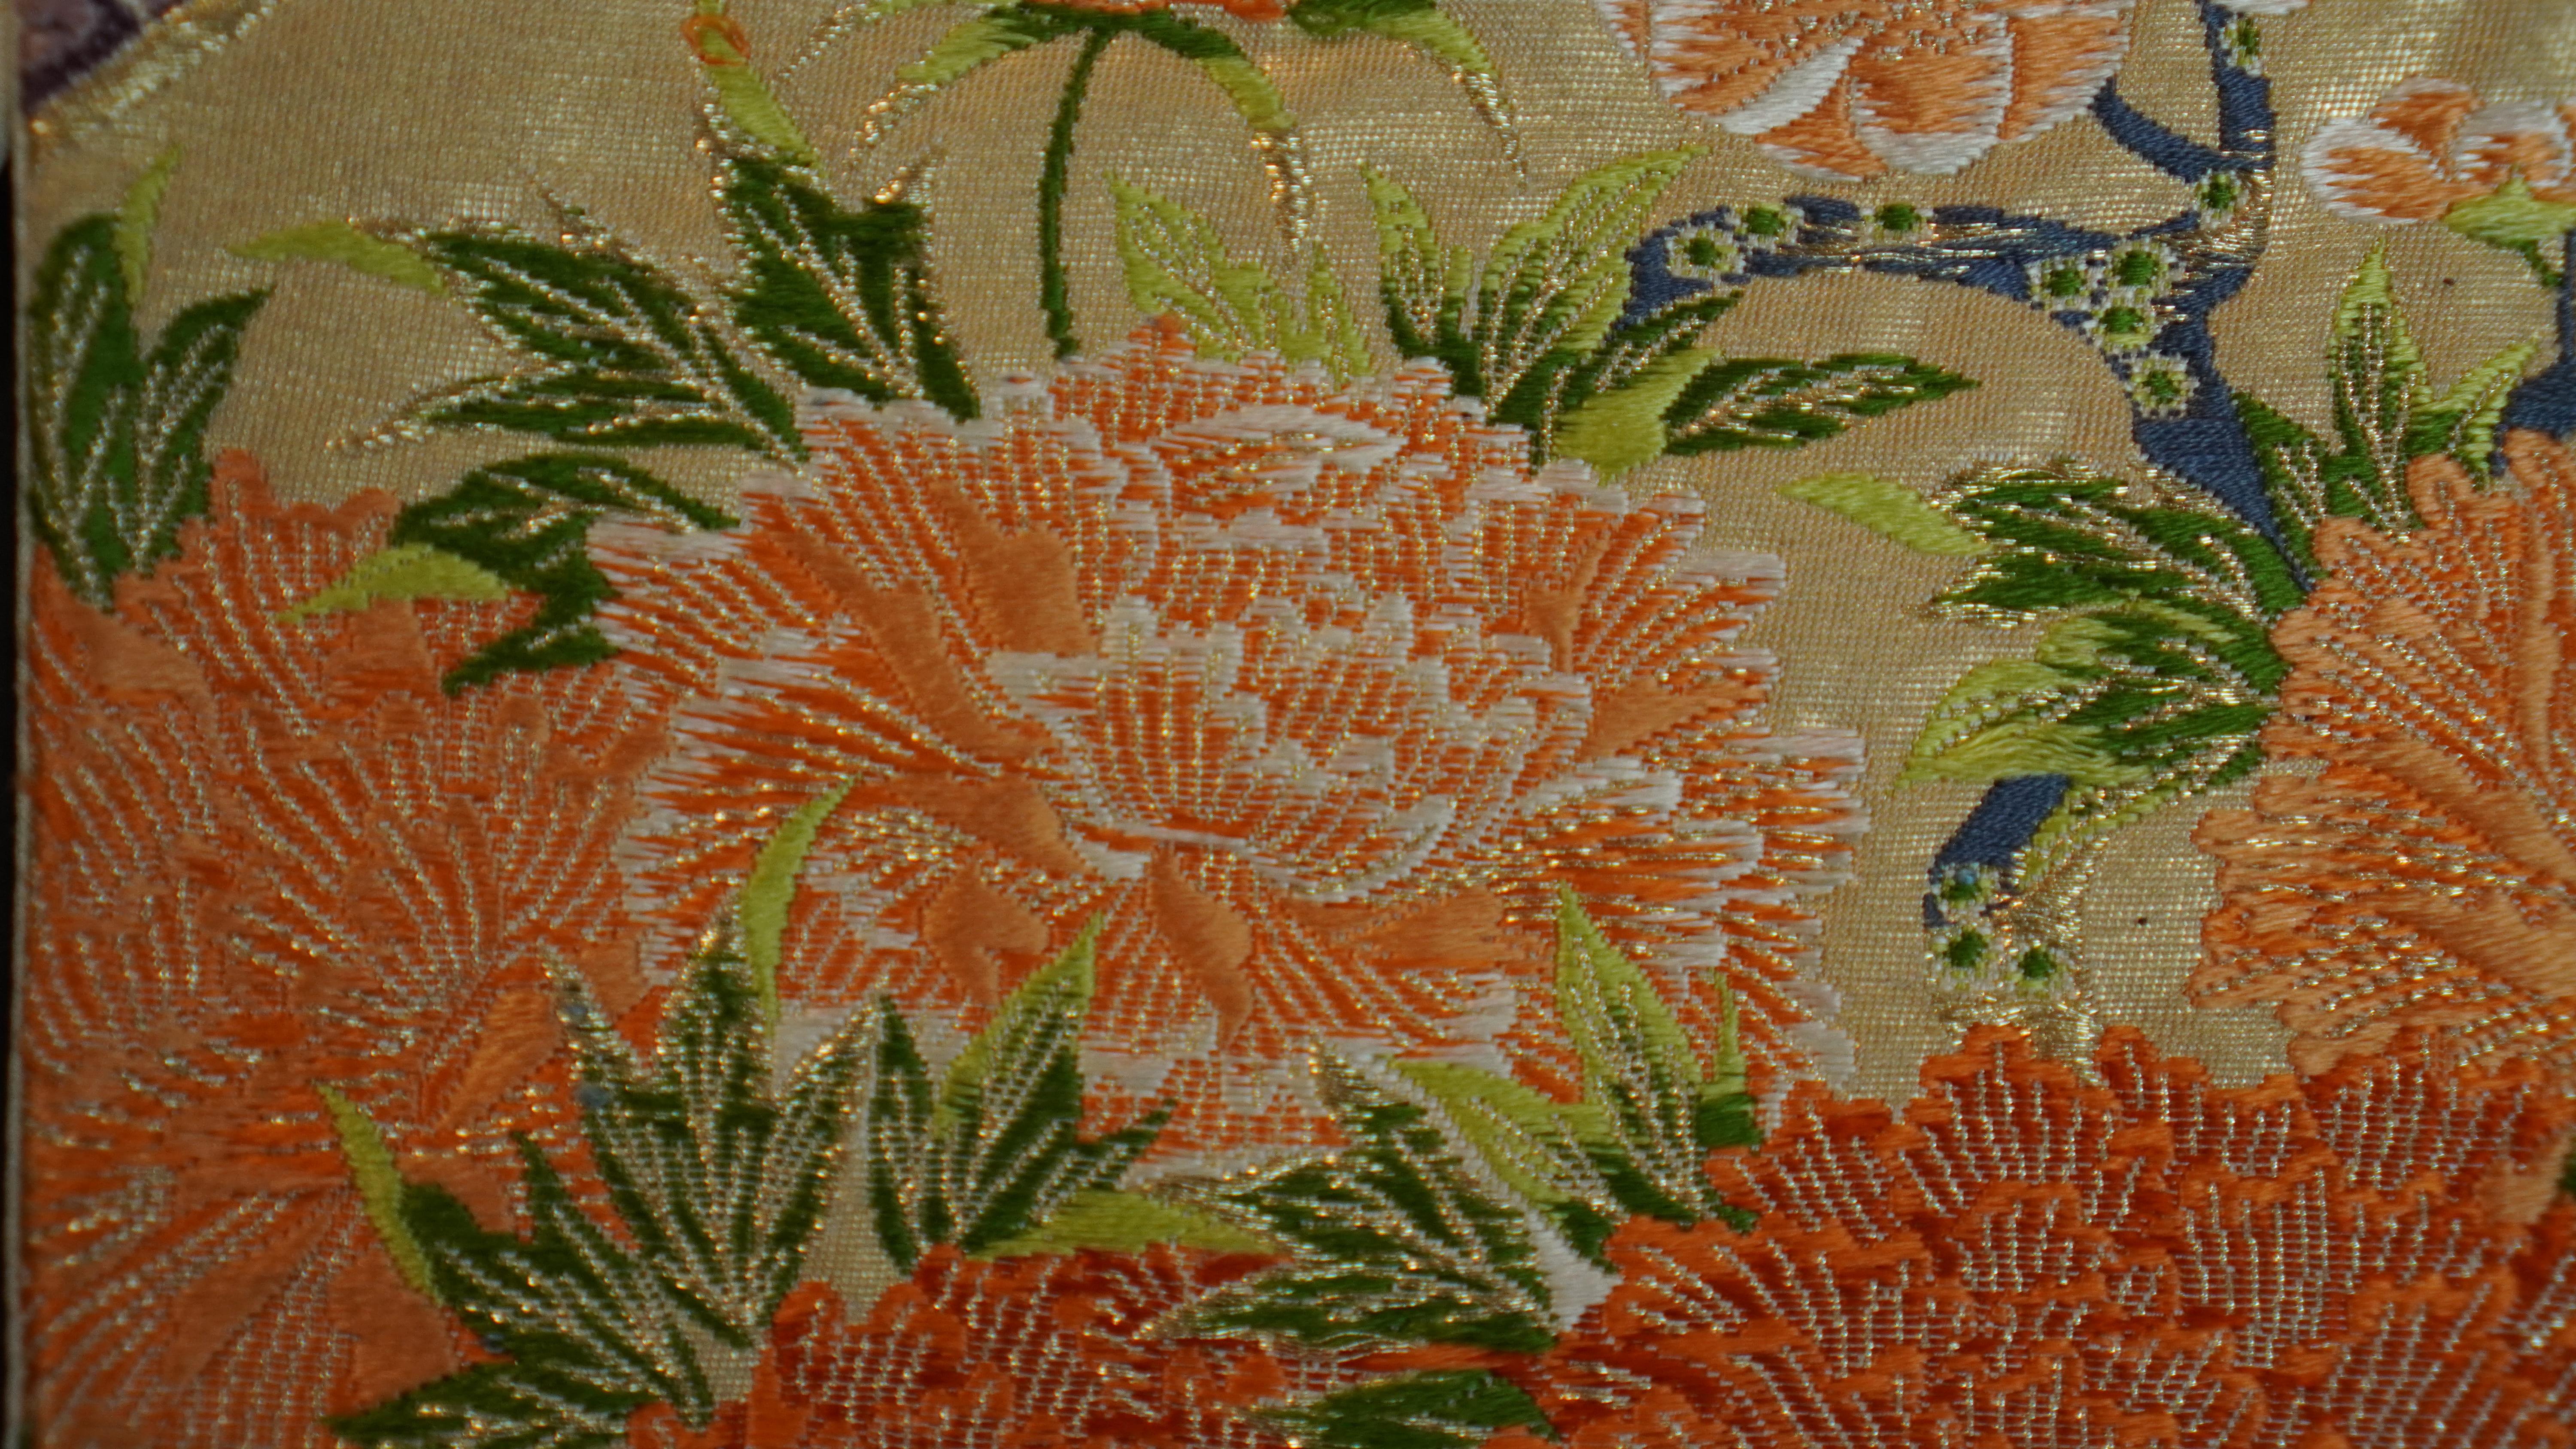  Japanese Art / Kimono Art / Tapestry, the King of Peacocks 2